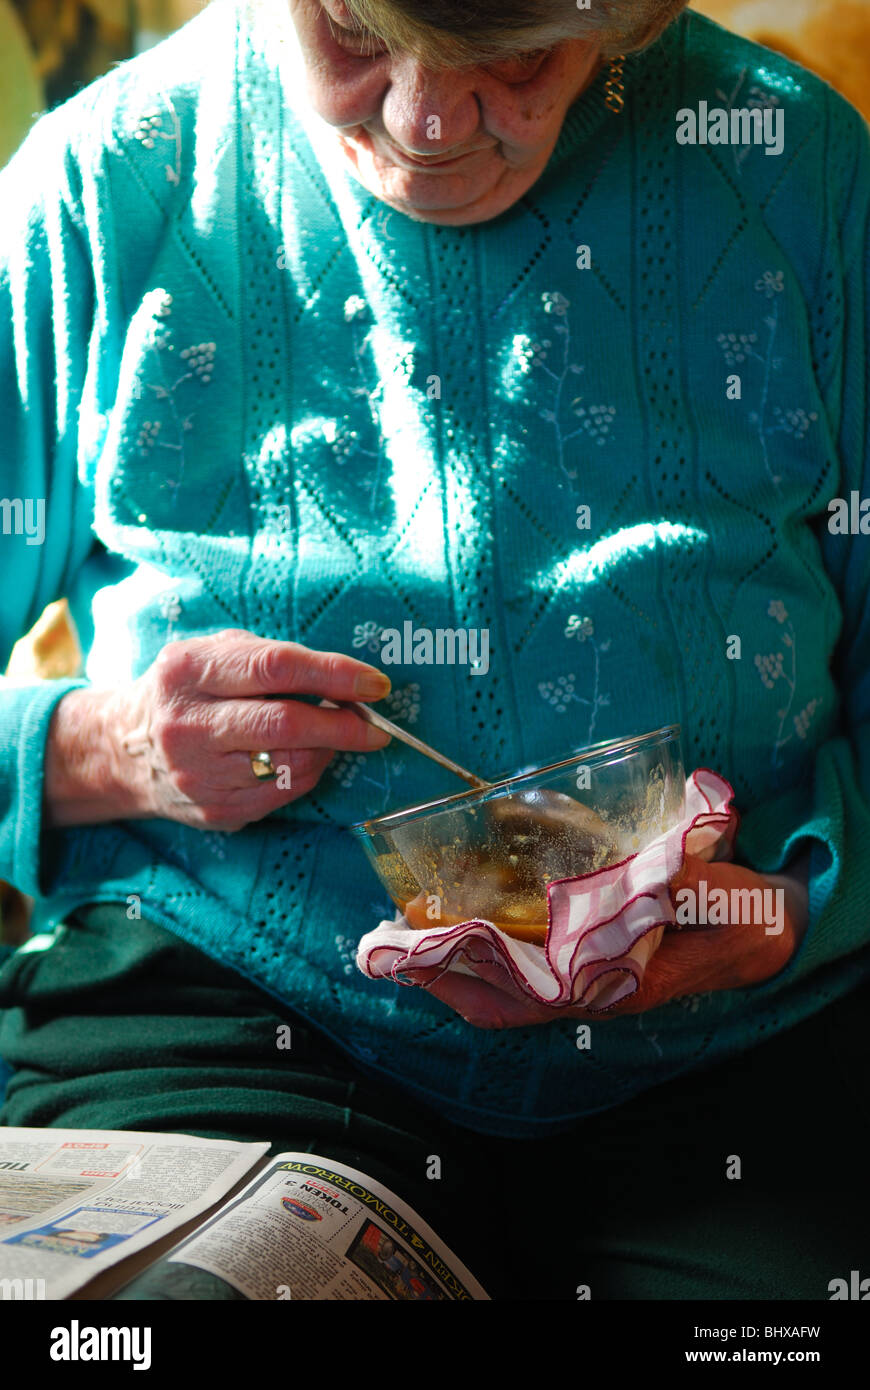 Mantener la comida caliente fotografías e imágenes de alta resolución -  Alamy